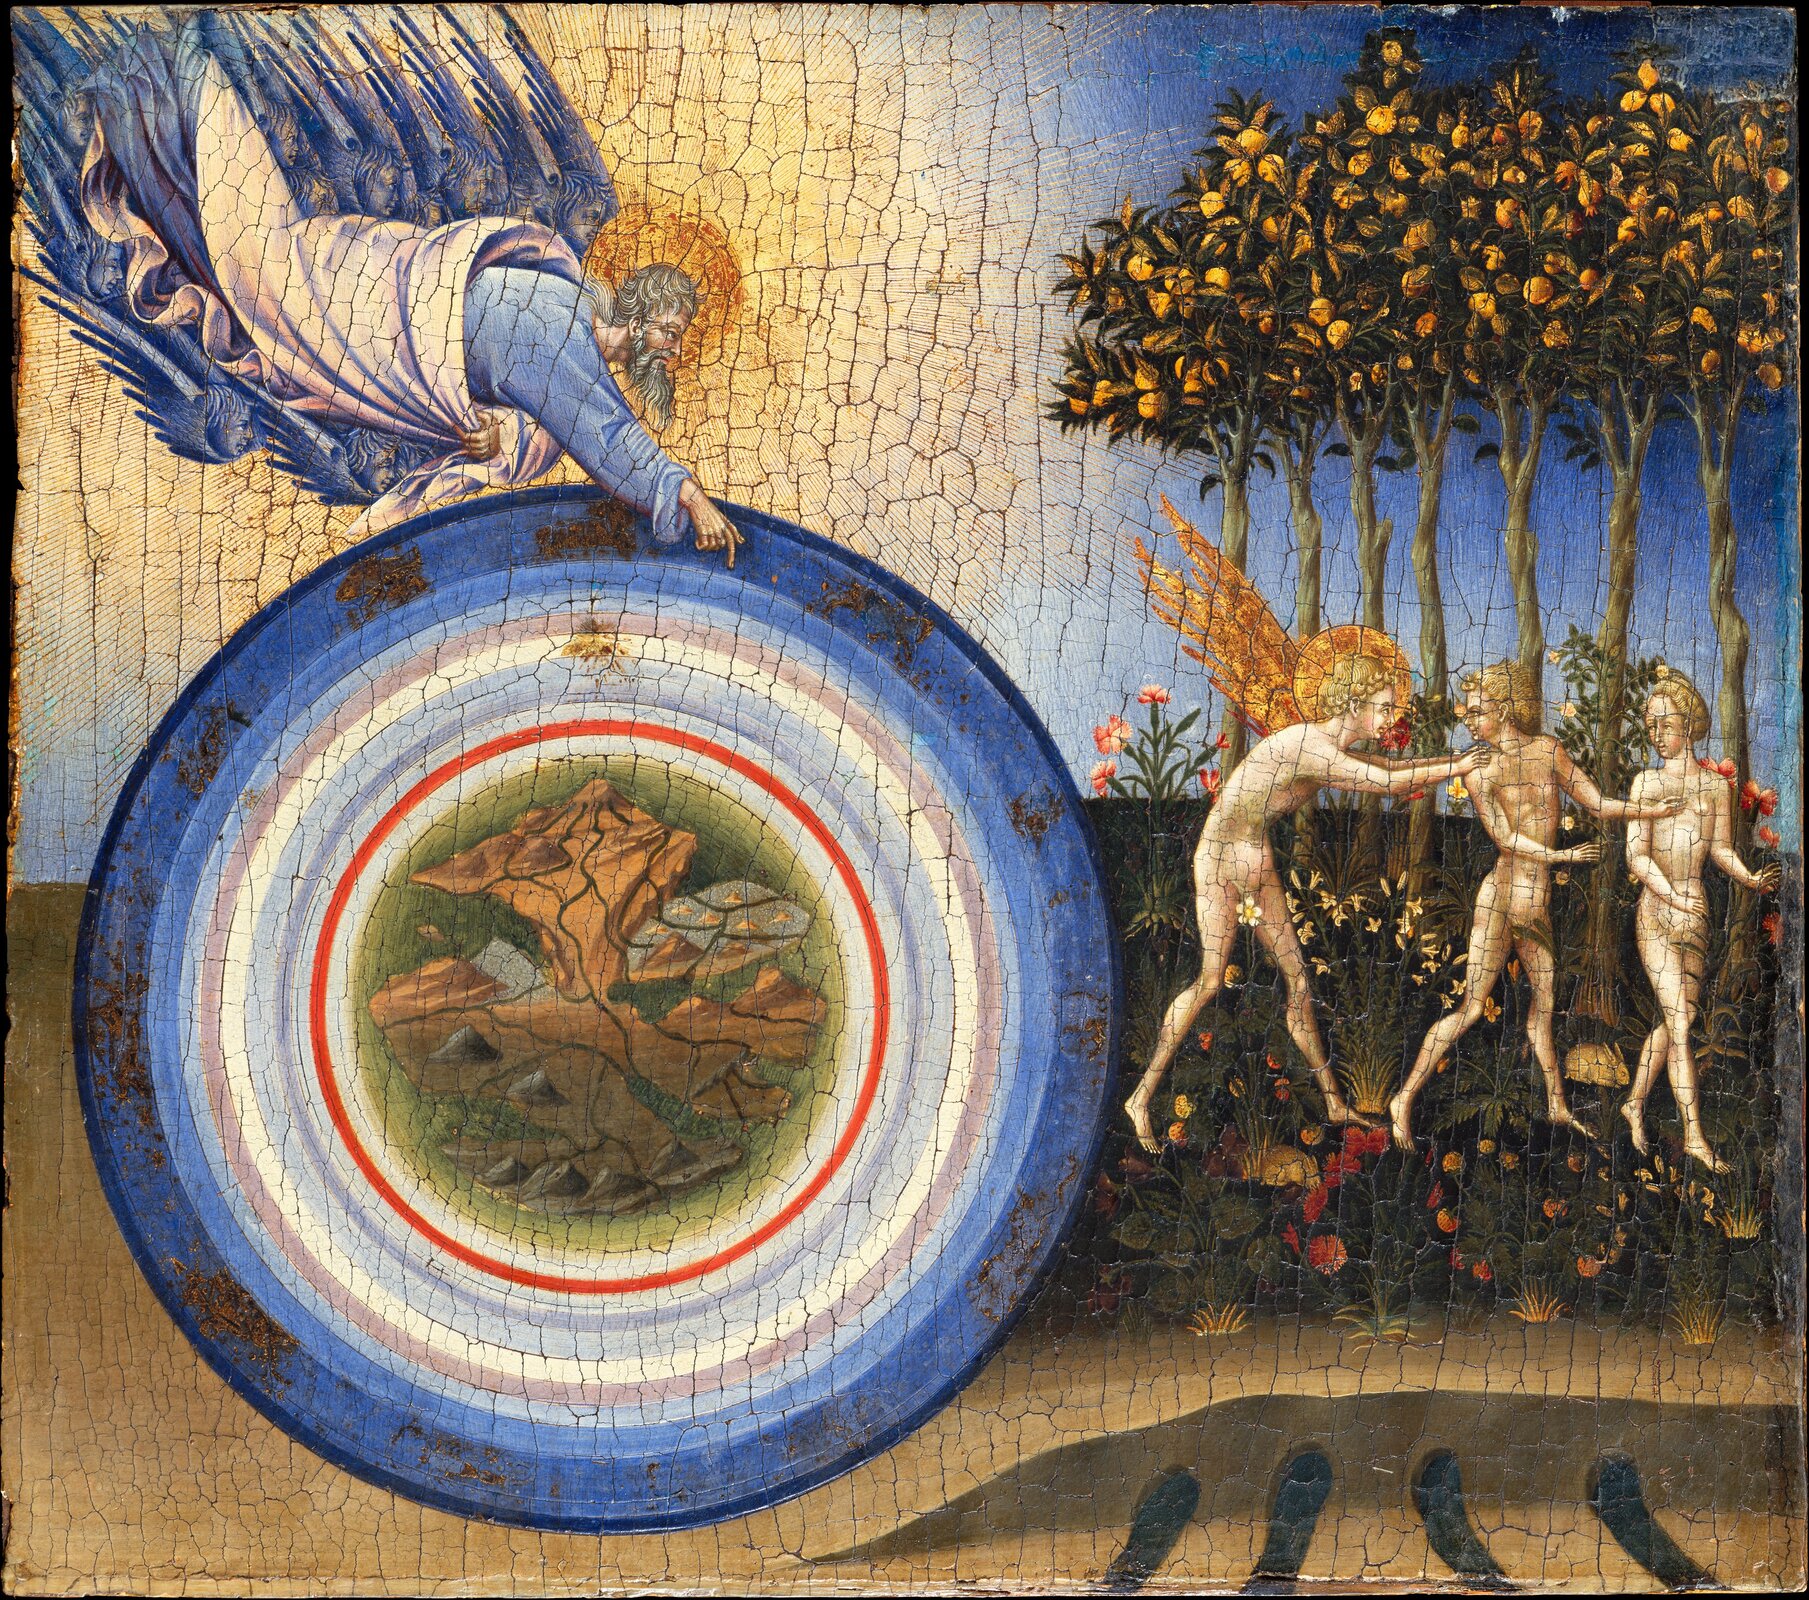 Ilustracja przedstawia obraz Giovanni di Paolo „Stworzenie świata i wygnanie z Raju”. Bóg jako stwórca ukazany jest w narożniku jako świetlista postać z nimbem w okół głowy. Towarzyszą mu aniołowie. Prawą ręką wskazuje na kręgi z dwunastoma gwiazdozbiorami z pasa zodiakalnego. W dalszym kręgu znajduje się słońce oddzielone czerwoną linią od środka, w którym namalowane są góry, lądy i wody. Po prawej stronie ukazany jest raj, z którego anioł wyprowadza Adama i Ewę. Cherubin ma ogniste skrzydła i złoty nimb. Nadzy pierwsi rodzice odwracają się w jego kierunku. Za nimi stoją smukłe drzewa z owocami i rosną kwiaty.